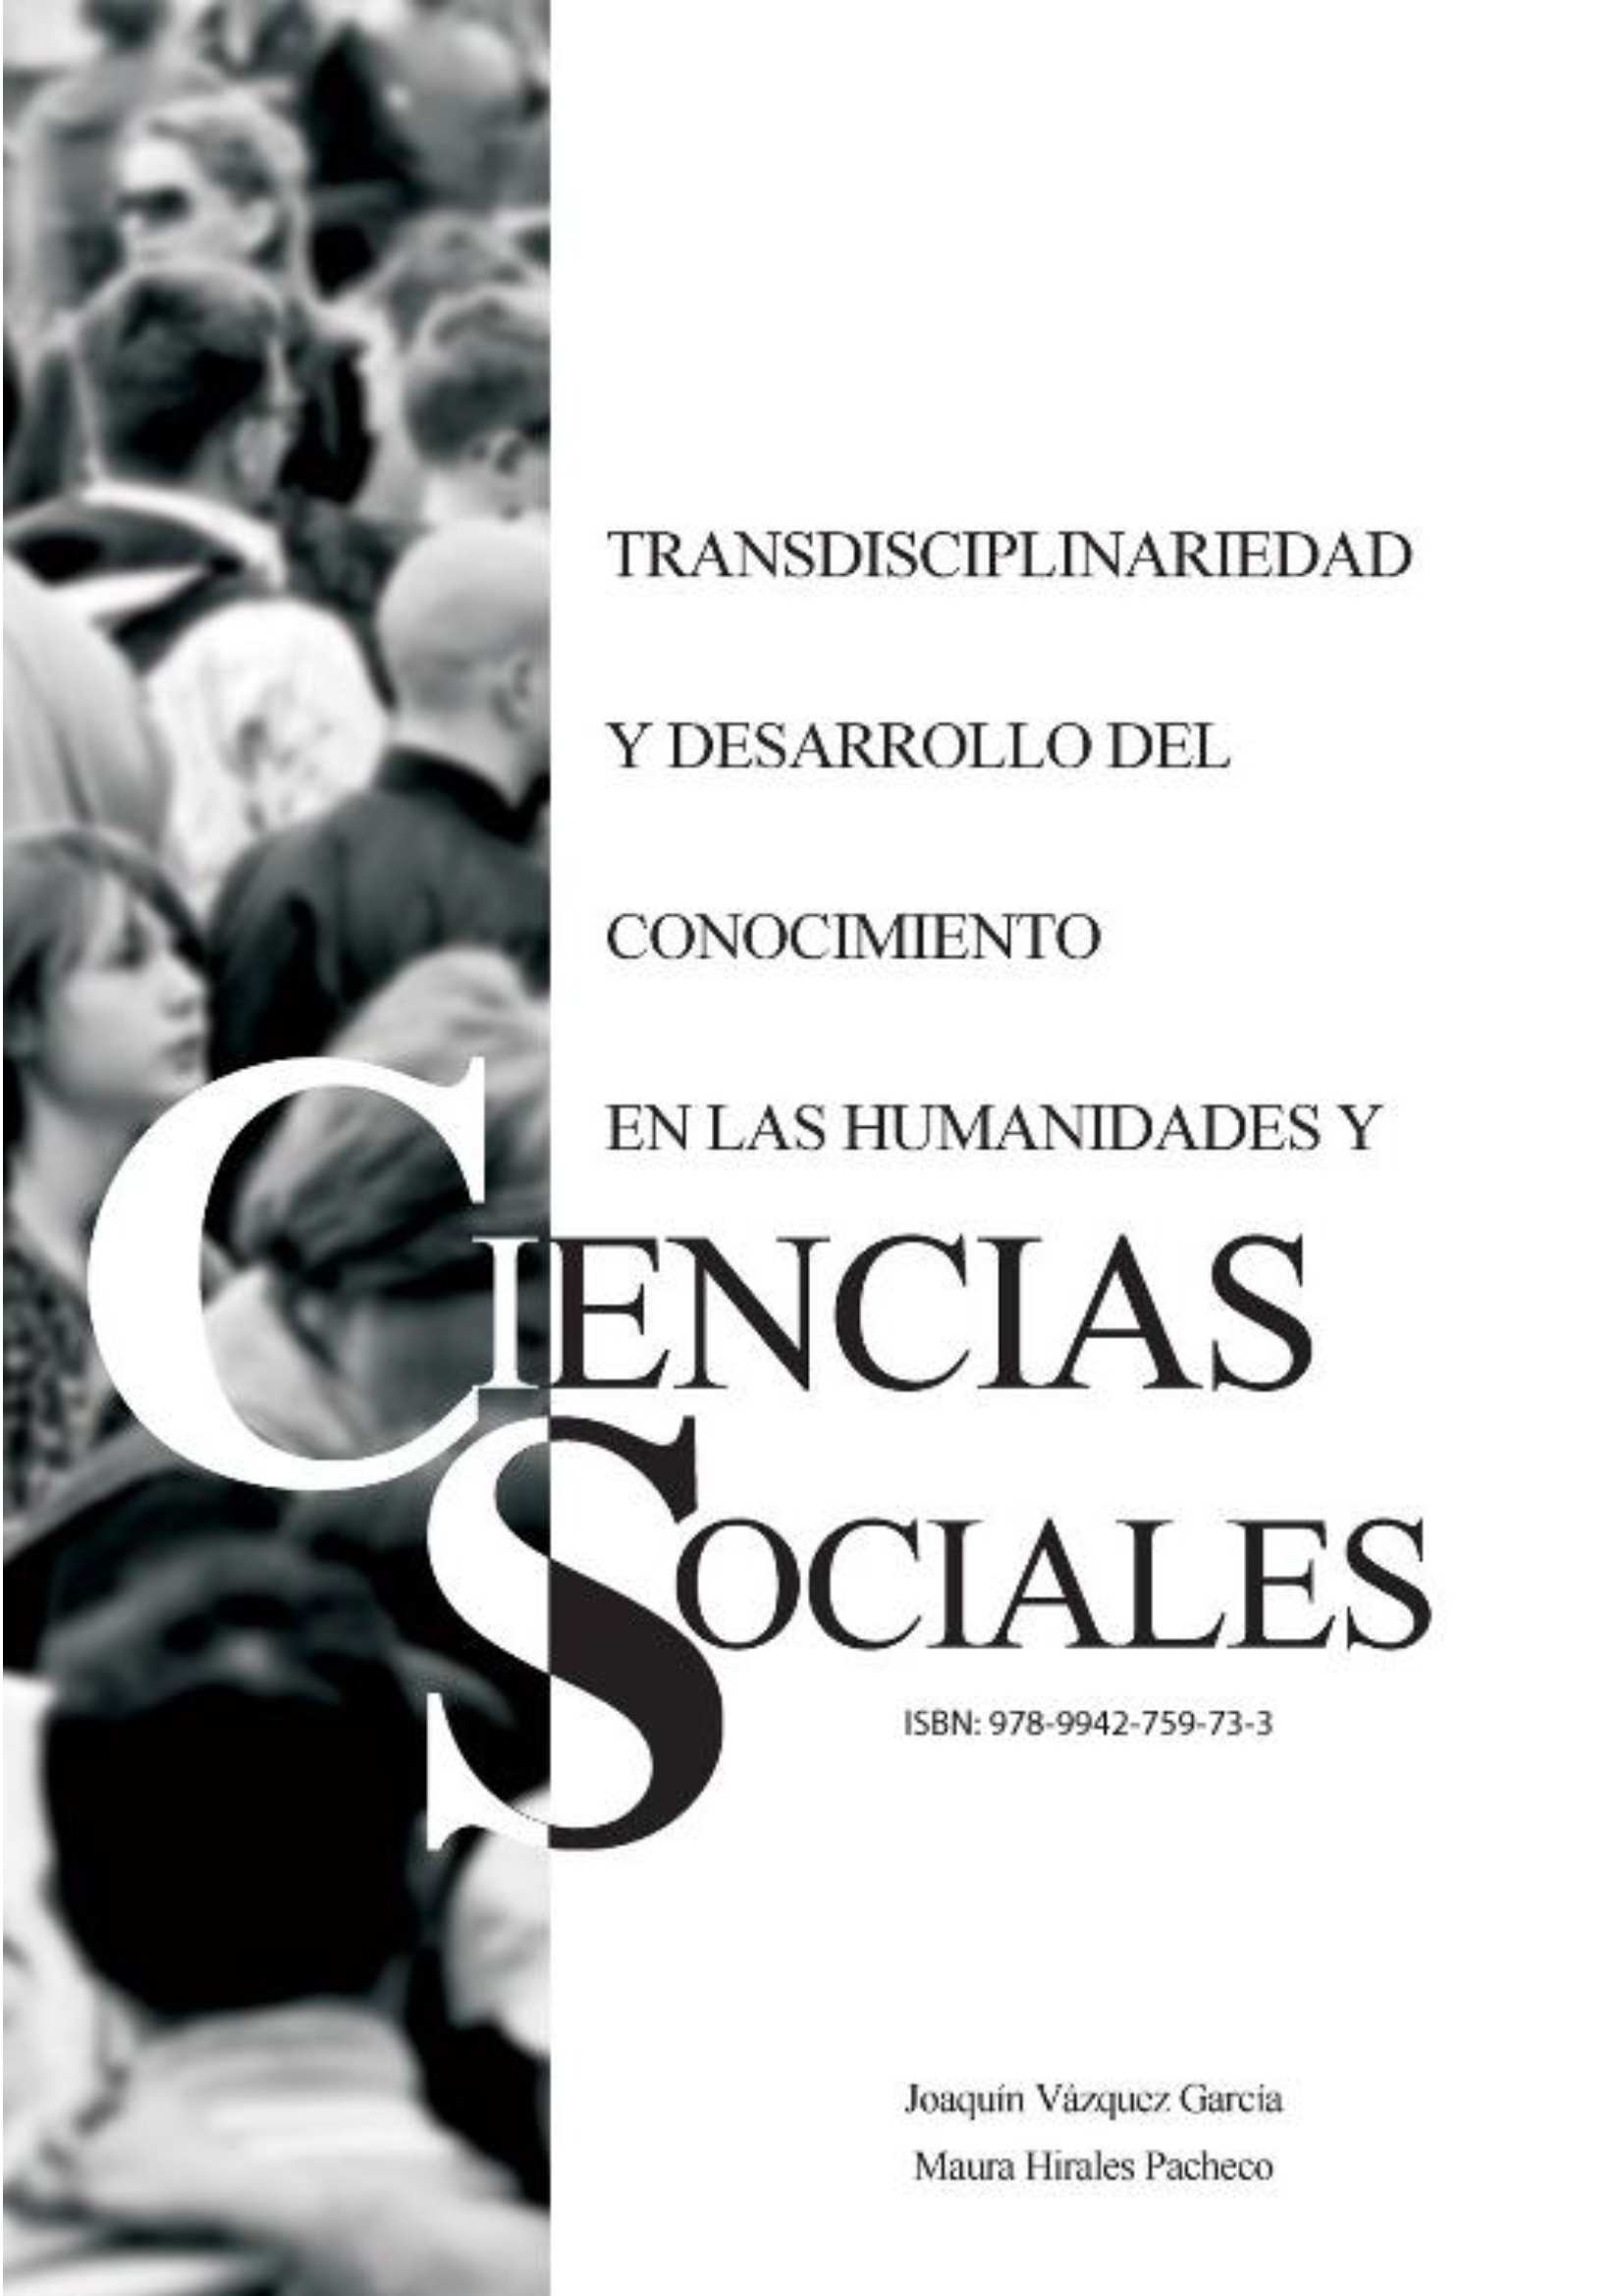 Tramsdiciplinariedad y Desarrollo del Conocimiento en las Humanidades y Ciencias Sociales